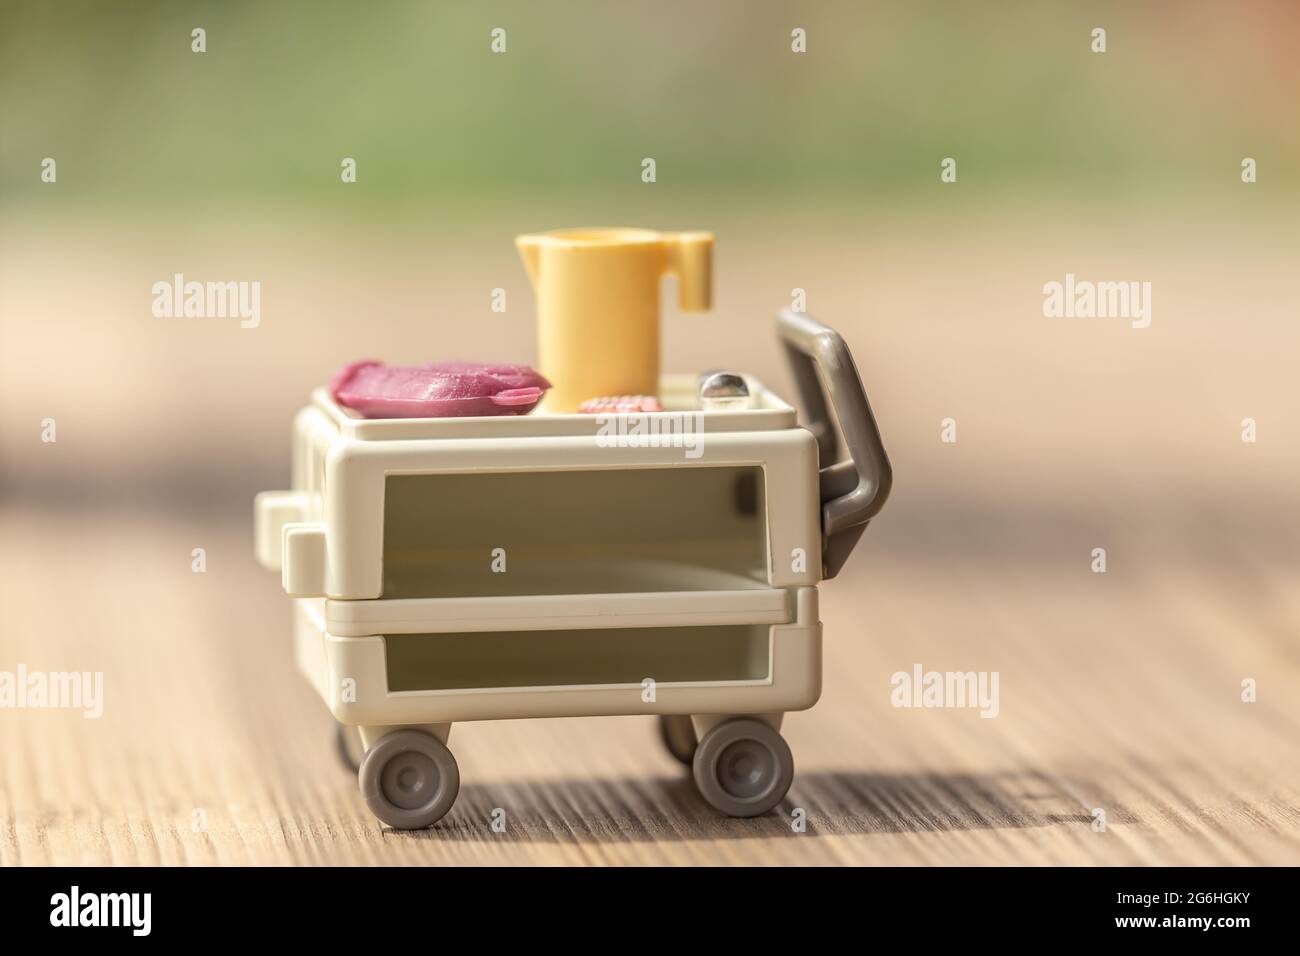 Pflegeszenerie mit Spielzeug nachjustiert: Eine Wärmflasche, eine Zahnplatte und eine Spritze auf einem medizinischen Trolley Stockfoto